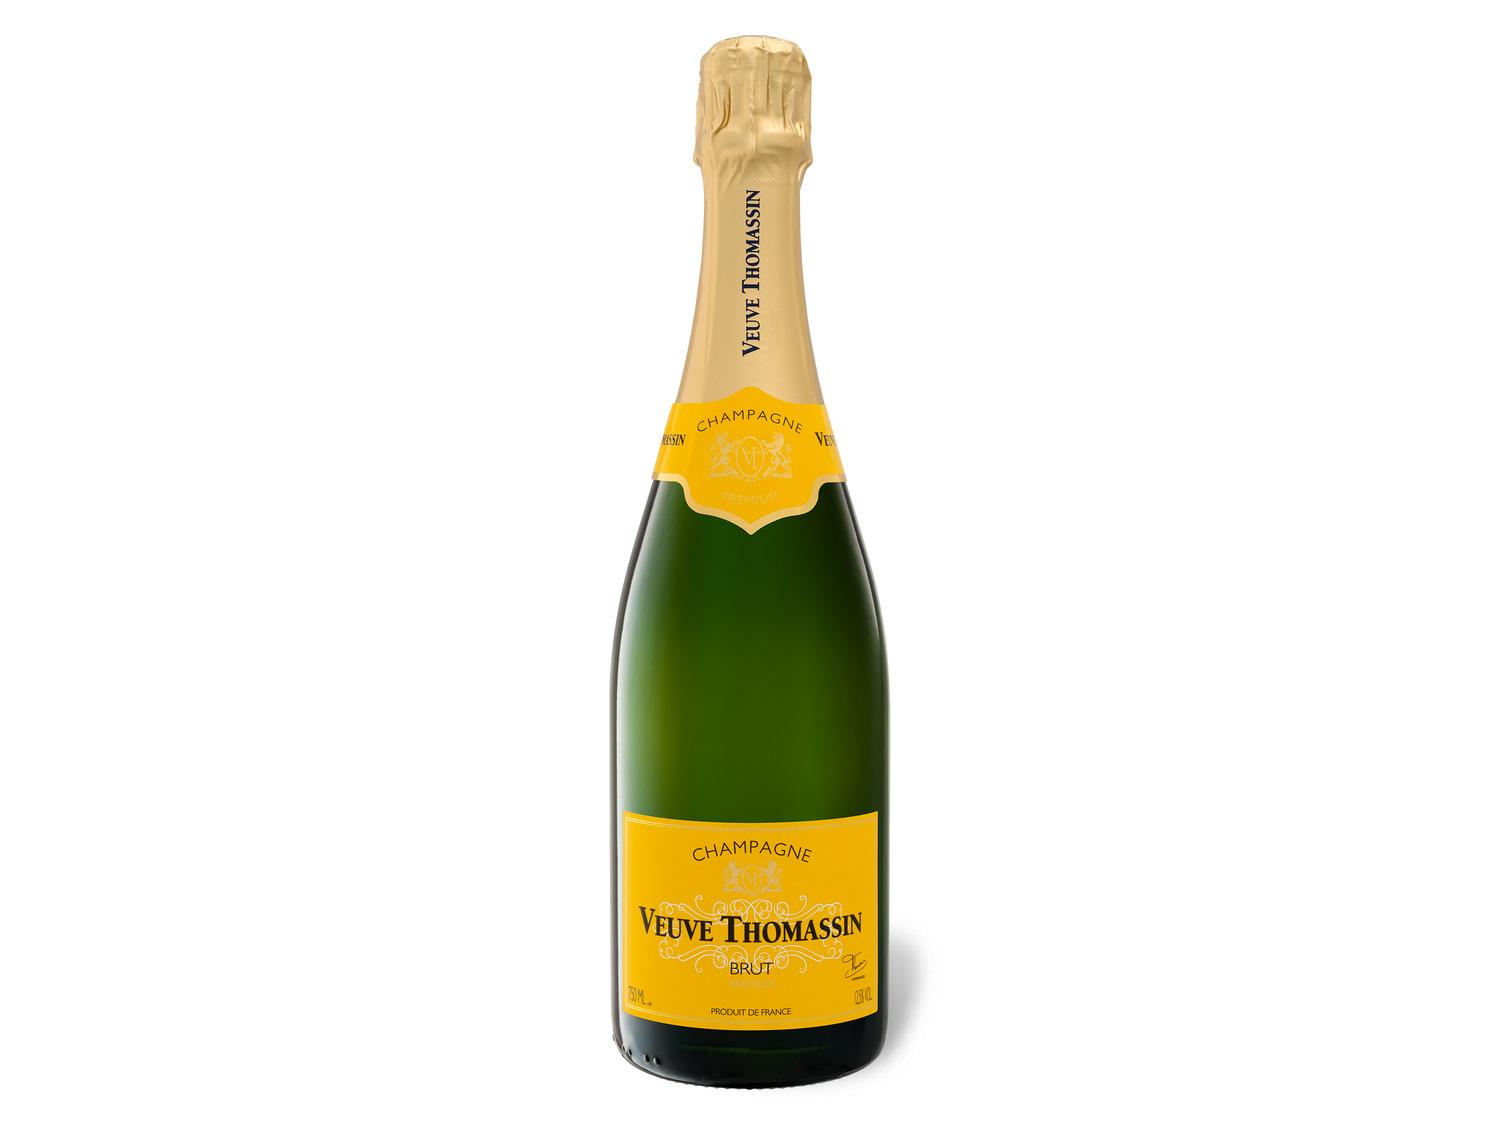 Veuve Thomassin brut, Champagner | LIDL kaufen online